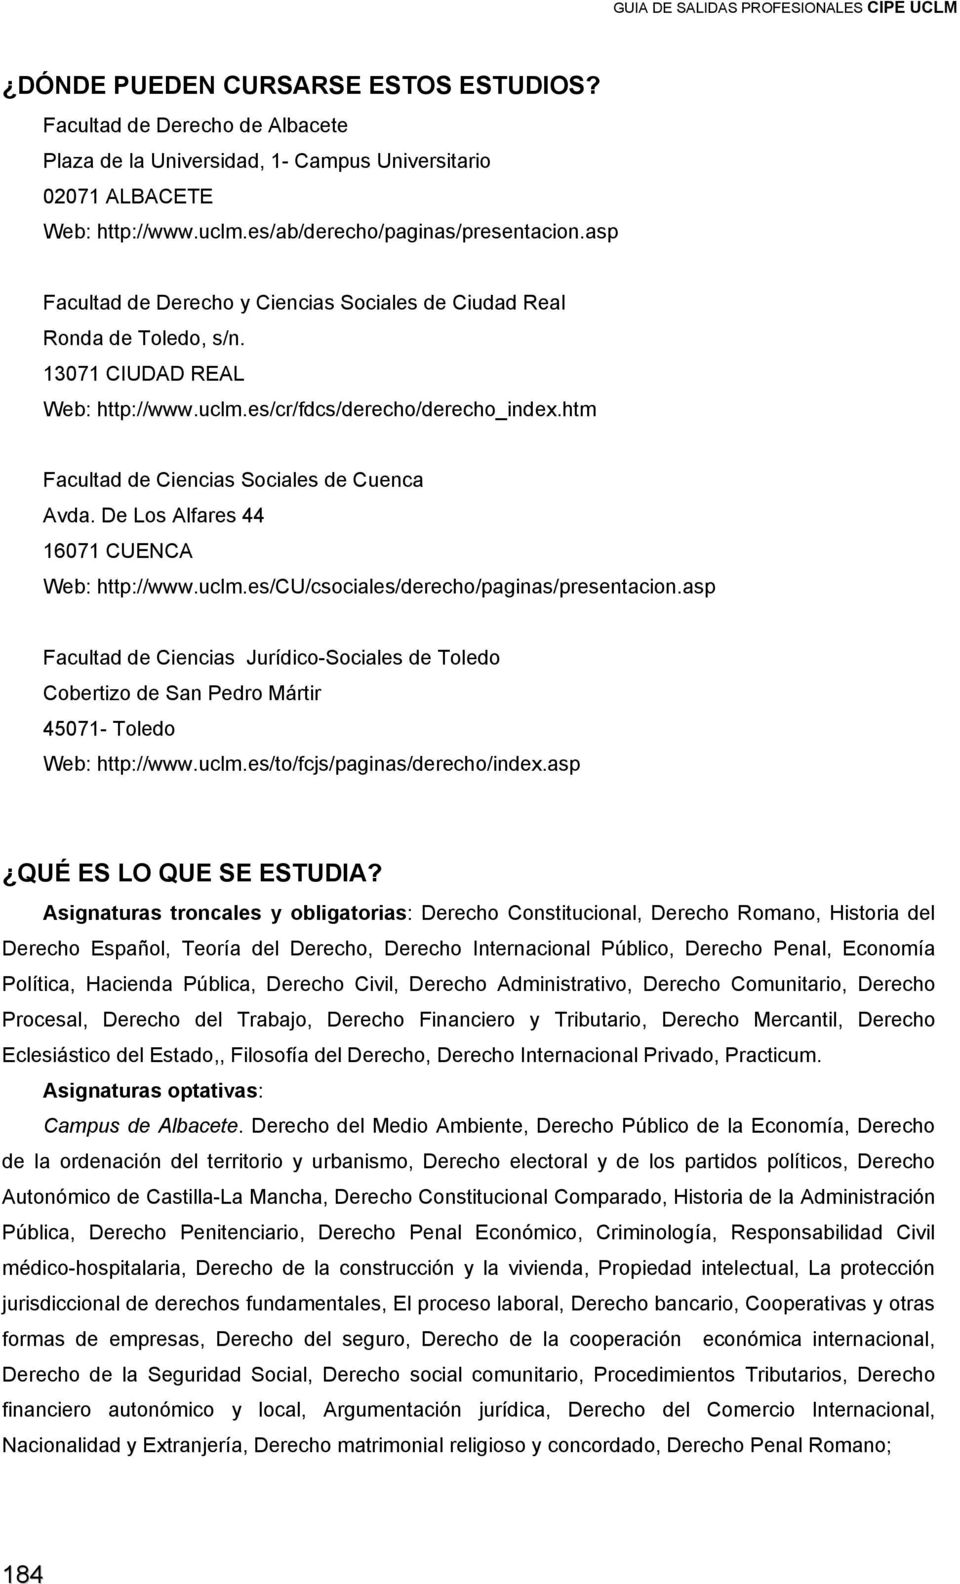 De Ls Alfares 44 16071 CUENCA Web: http://www.uclm.es/cu/csciales/derech/paginas/presentacin.asp Facultad de Ciencias Jurídic-Sciales de Tled Cbertiz de San Pedr Mártir 45071- Tled Web: http://www.